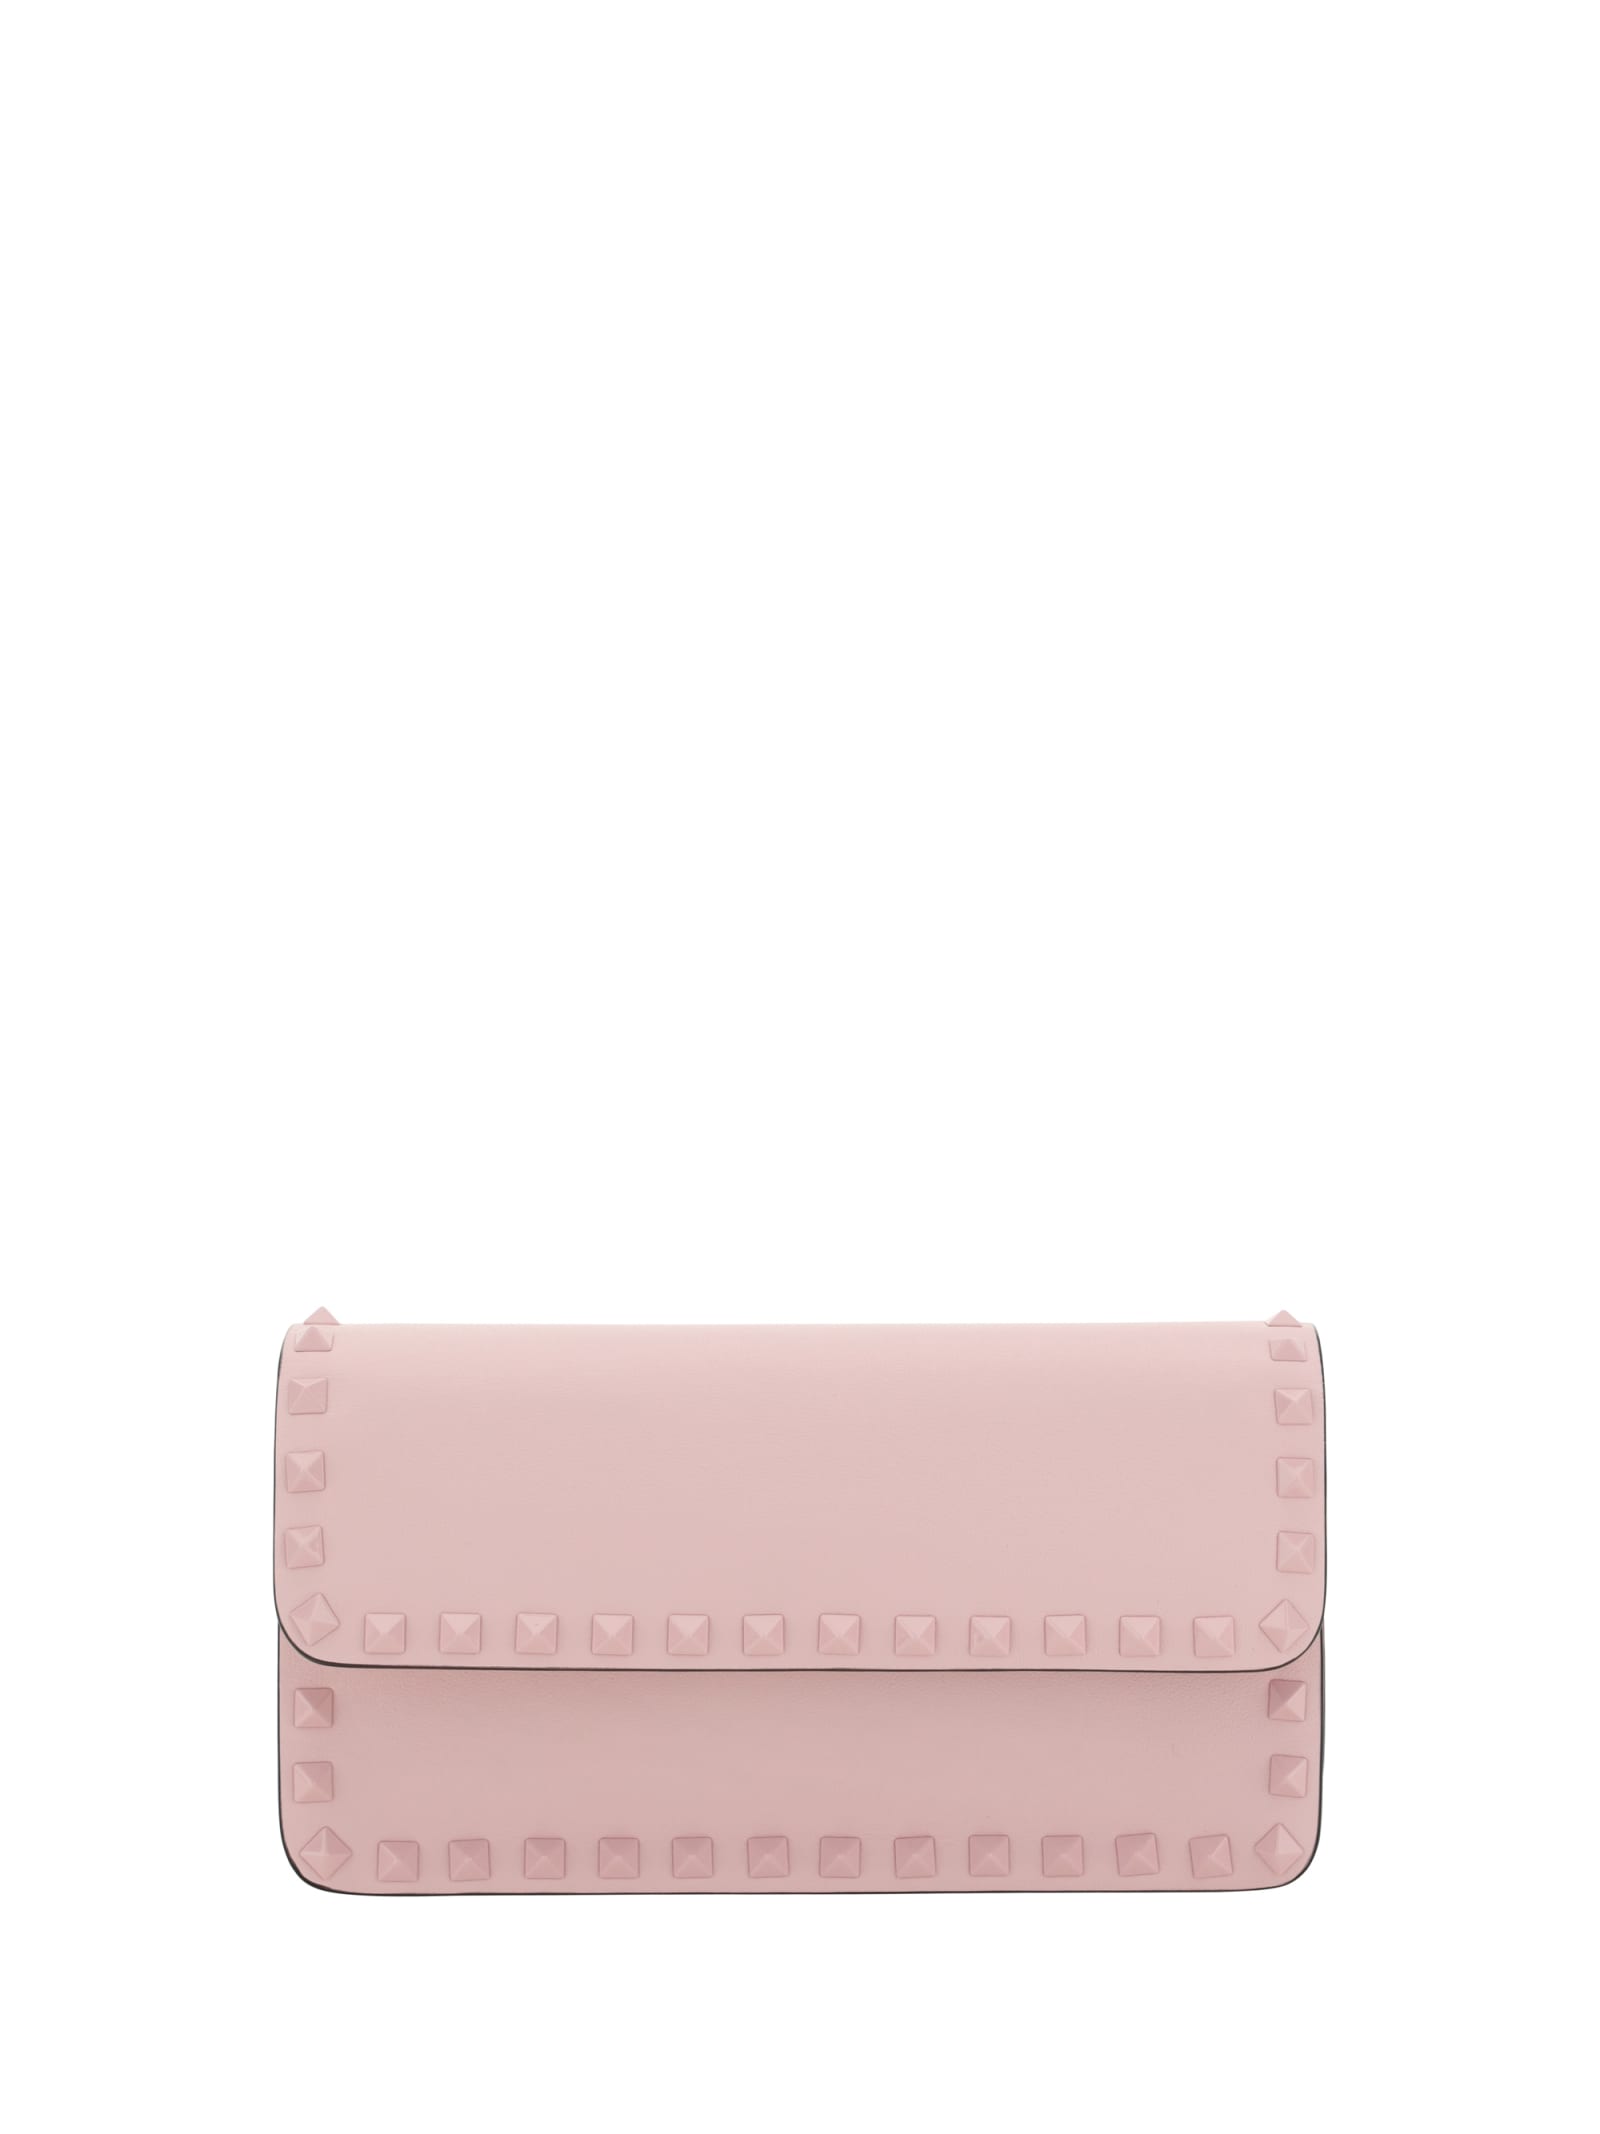 Valentino Garavani Rockstud Handbag In Rose Quartz